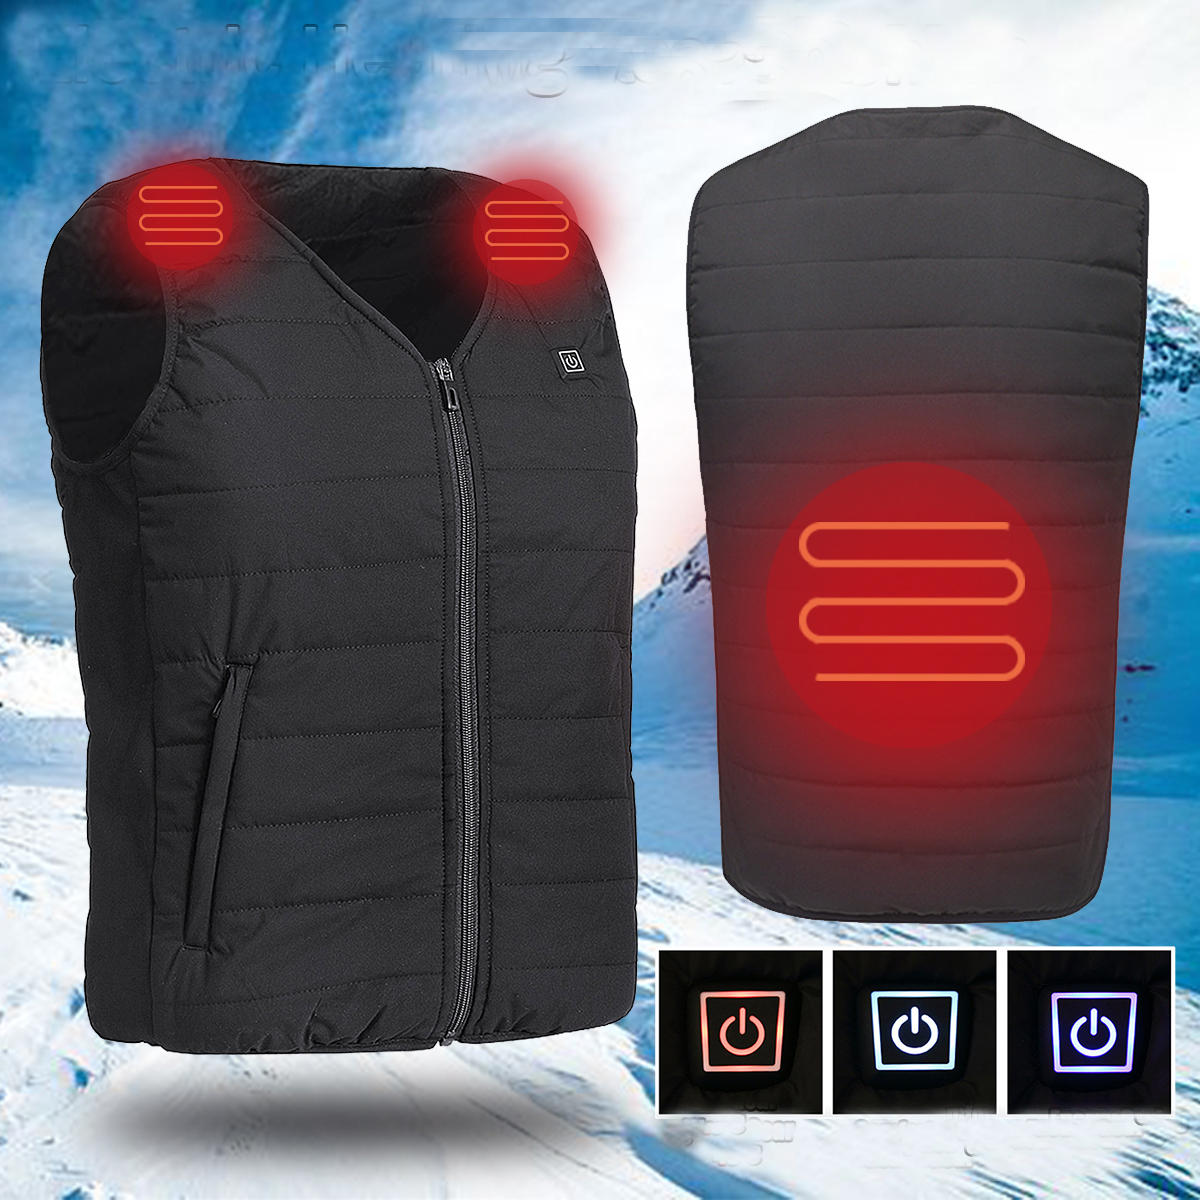 Hombres chaqueta de chaleco de calefacción eléctrica USB al aire libre deportes Impermeable ropa de abrigo abrigado con calefacción de invierno